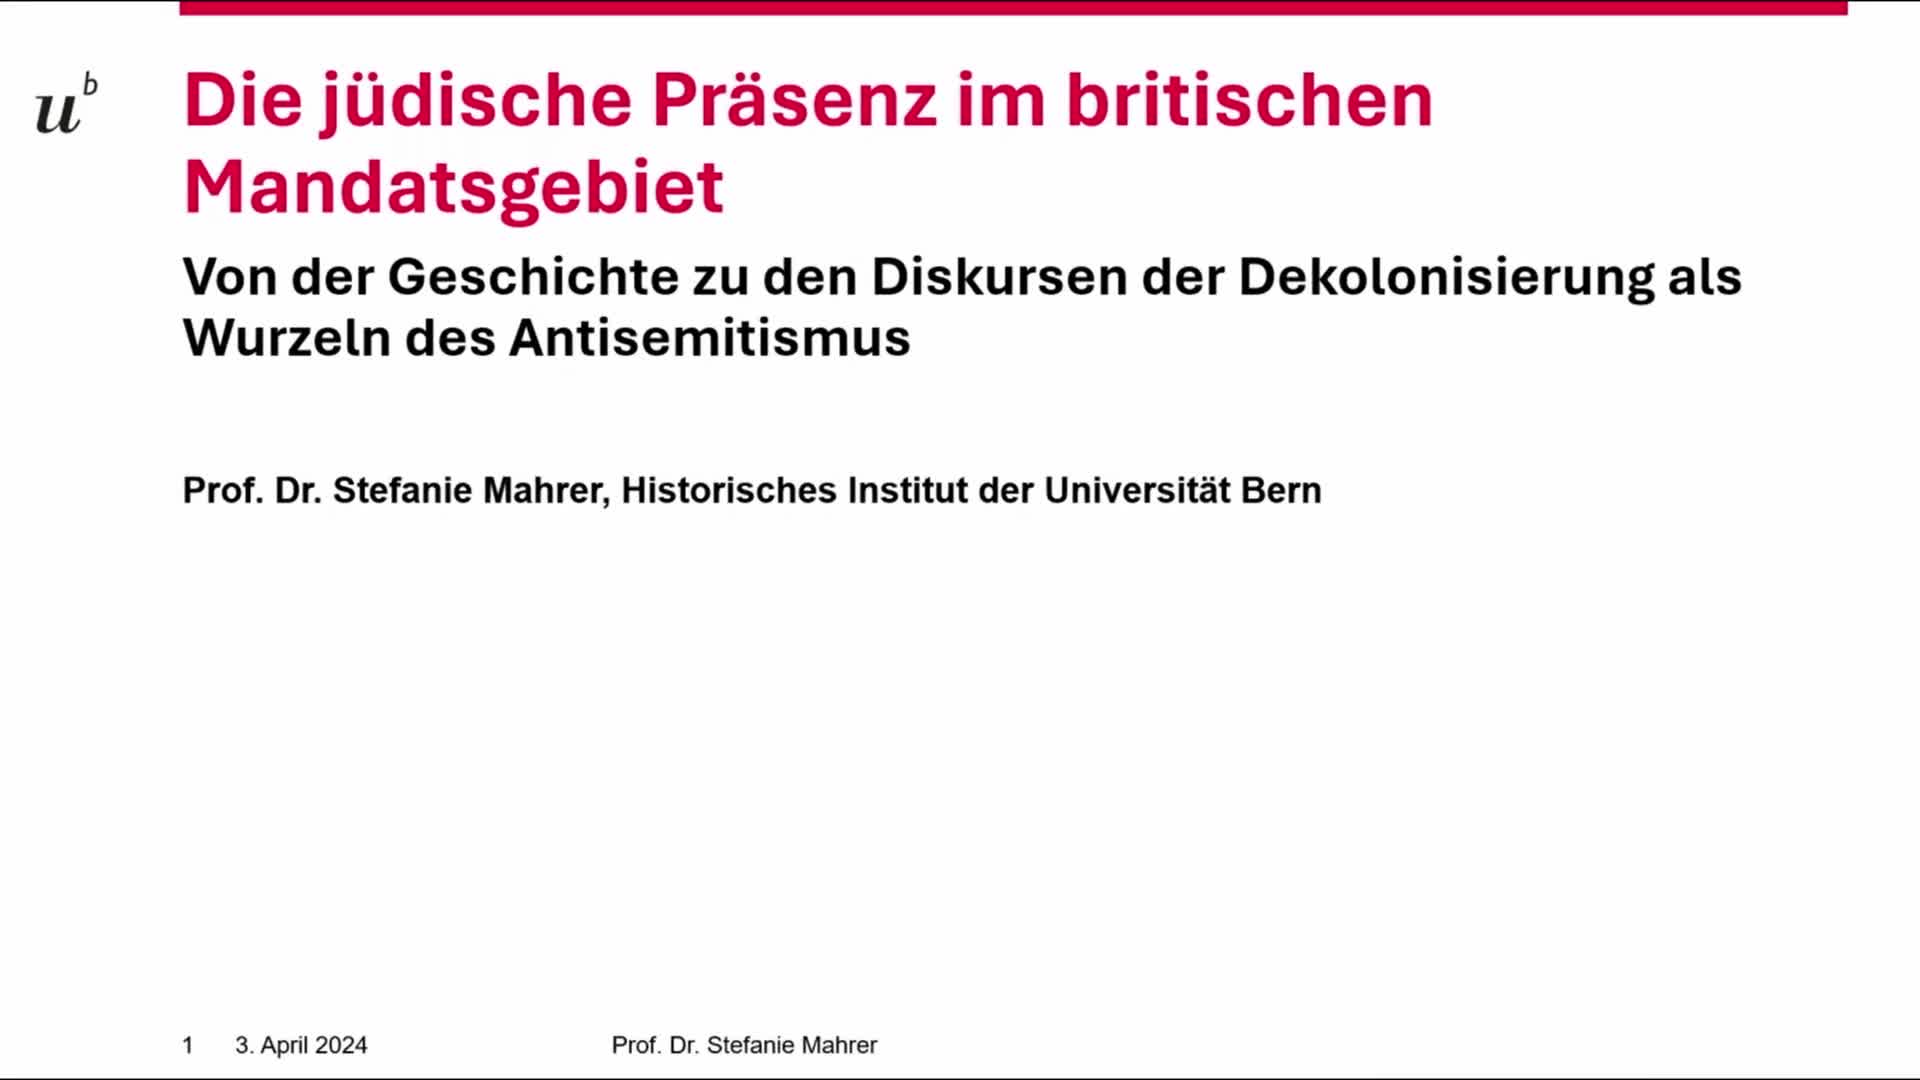 Miniaturansicht - Die jüdische Präsenz im britischen Mandatsgebiet: Von der Geschichte zu den Diskursen der Dekolonisierung als Wurzeln des Antisemitismus